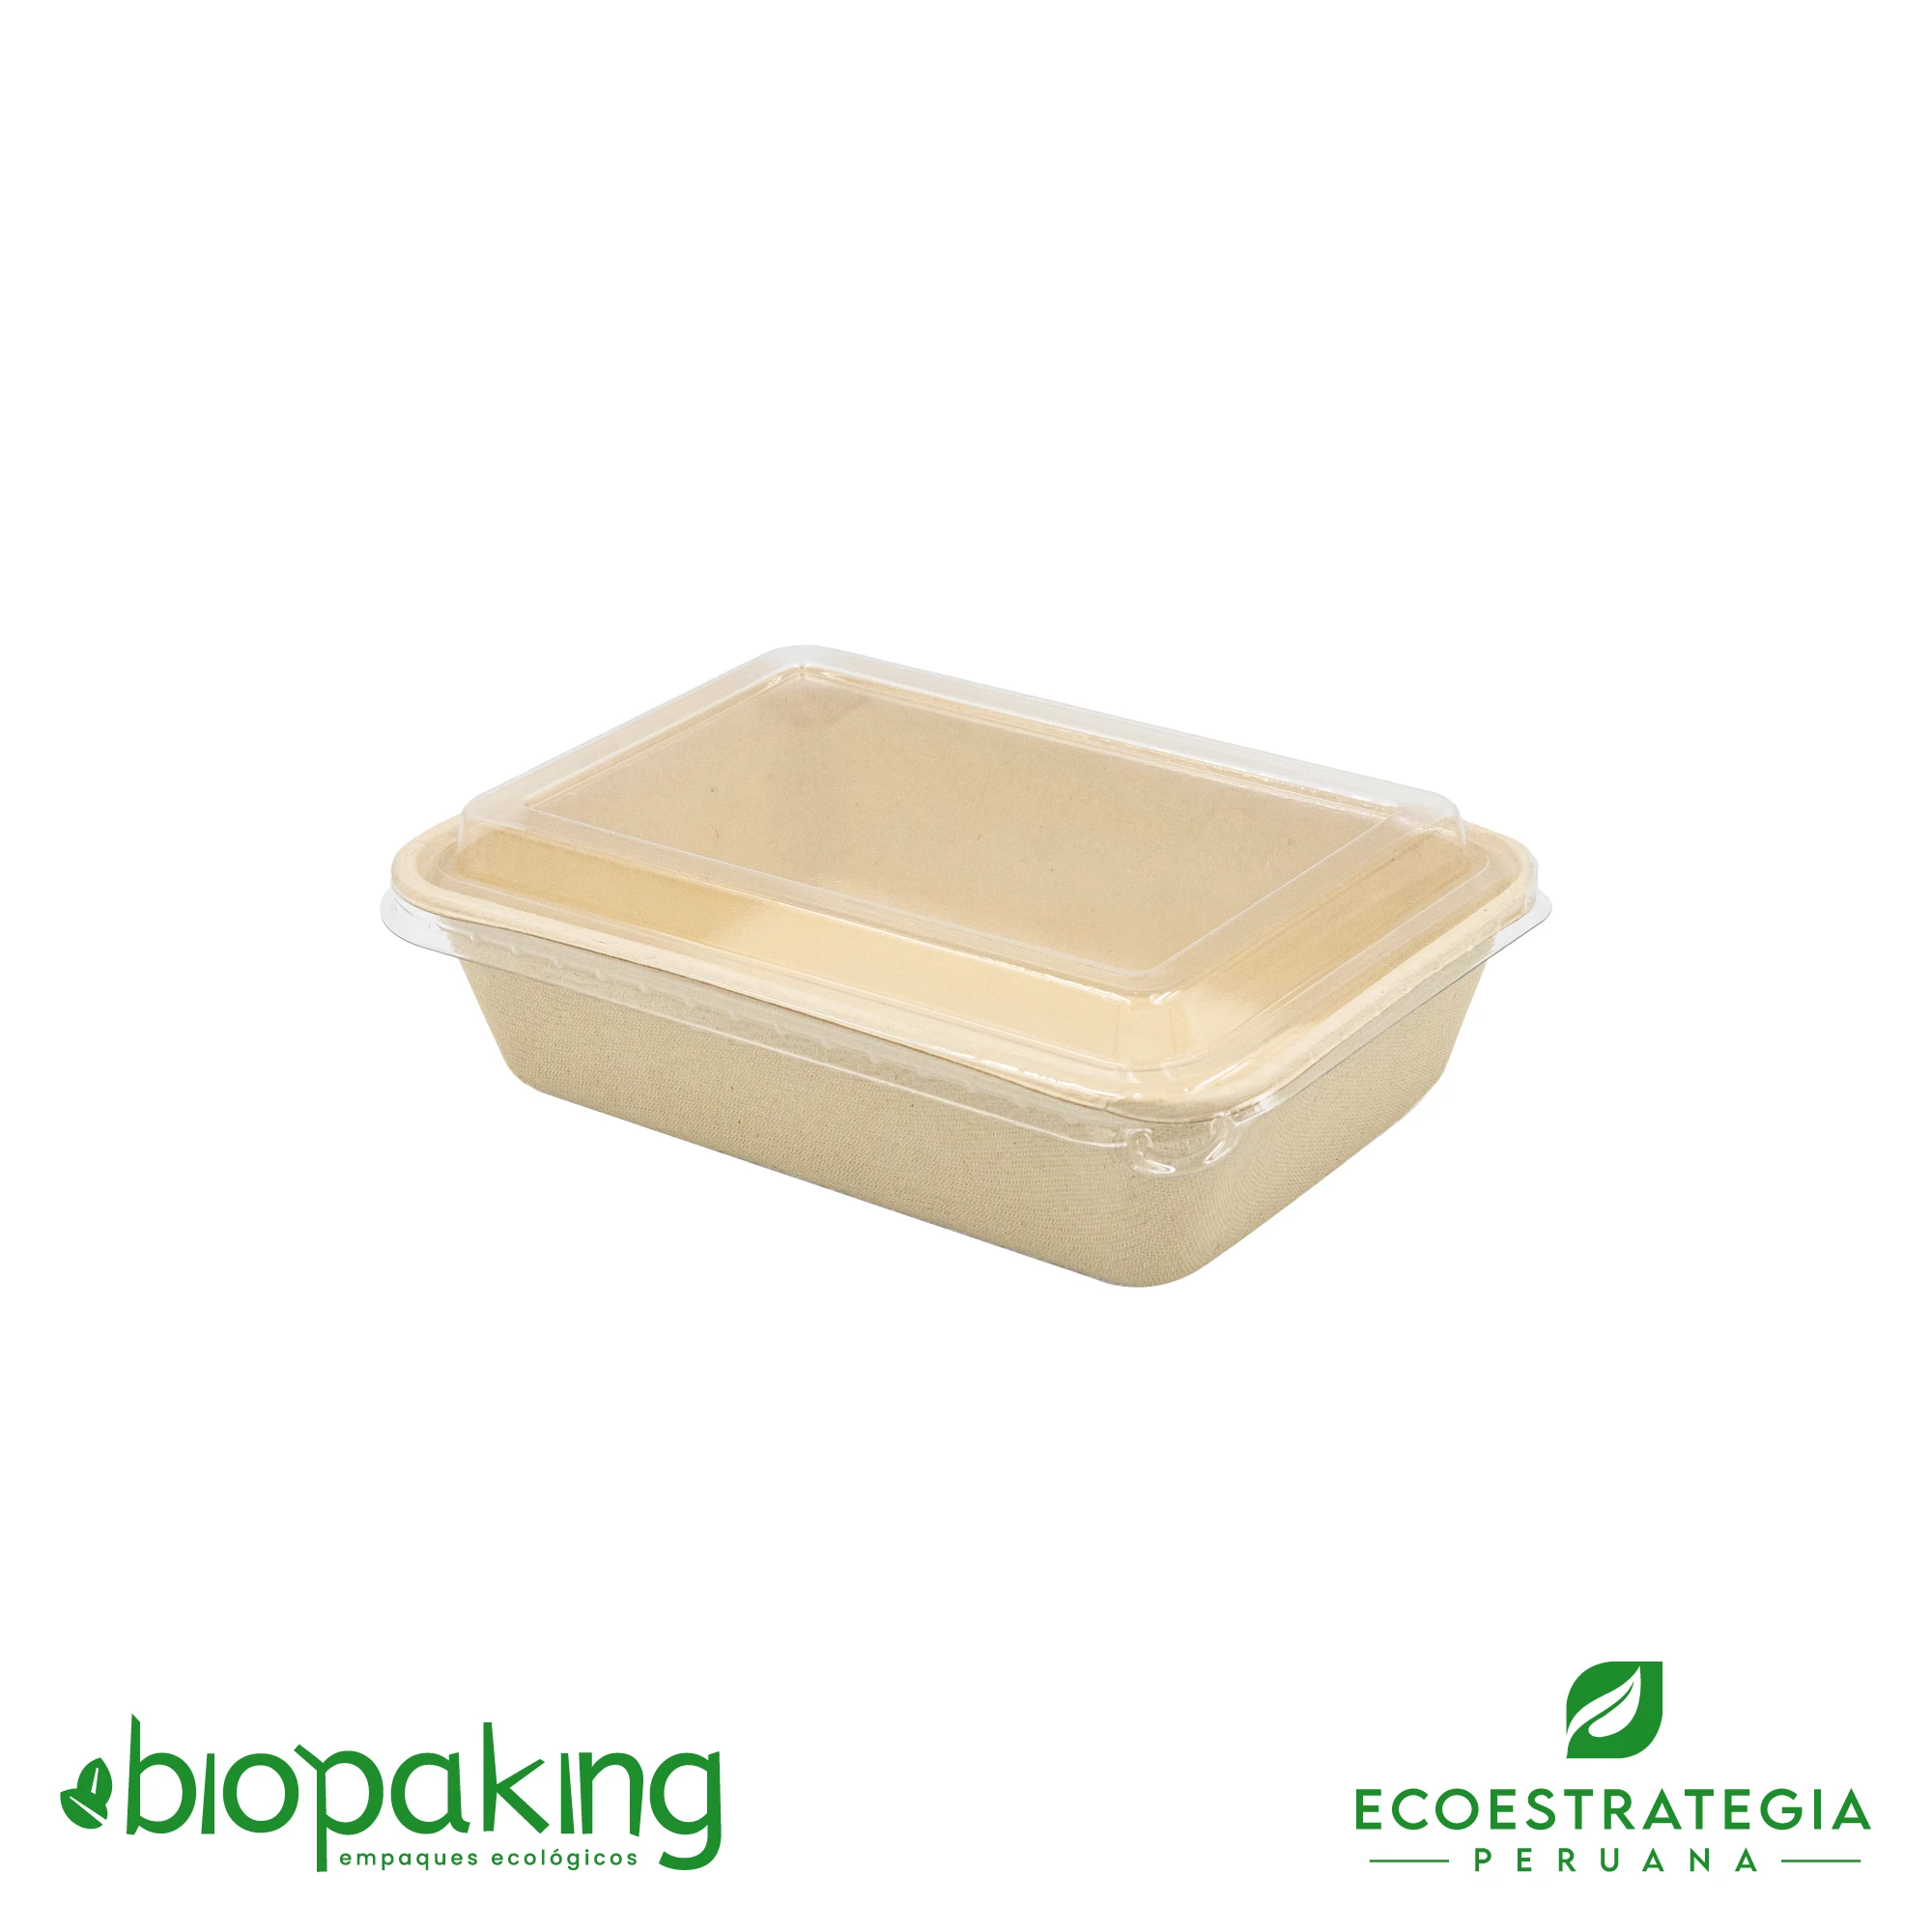 Esta bandeja biodegradable está hecho de fibra de trigo y tiene una capacidad de 800ml. Envases descartables con gramaje ideal, cotiza tus tapers ecológicos